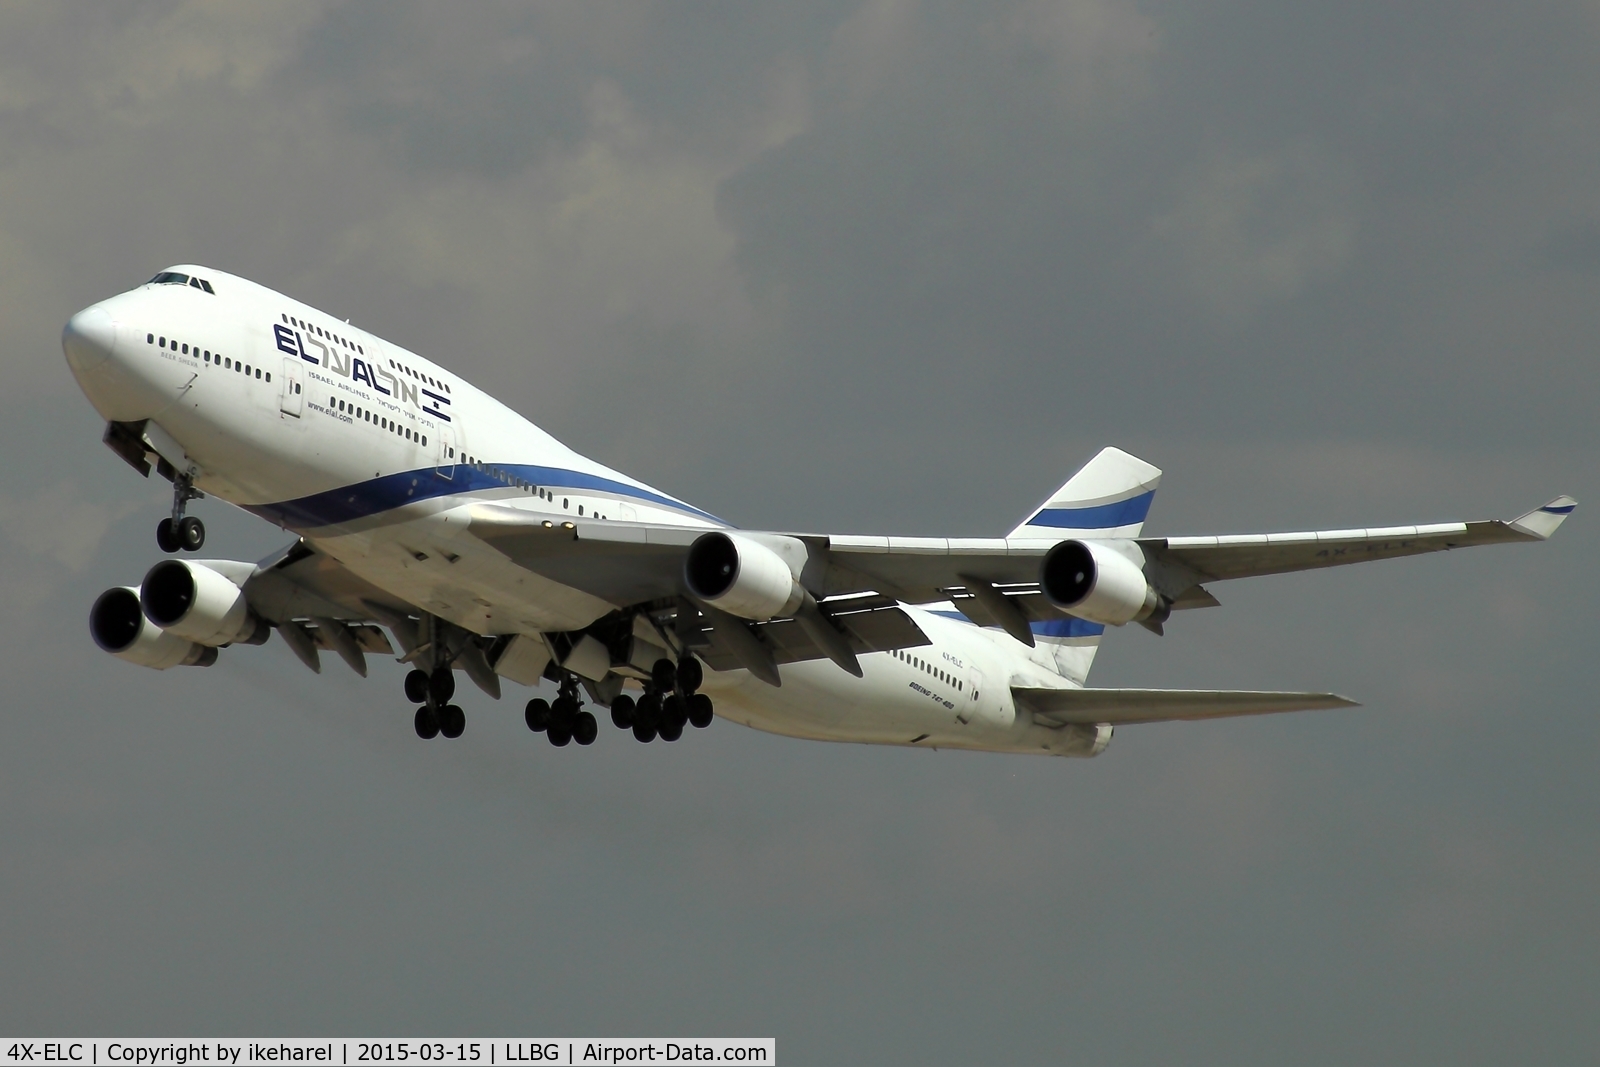 4X-ELC, 1995 Boeing 747-458 C/N 27915, Heavy T/O from runway 26, en-route to NYC.